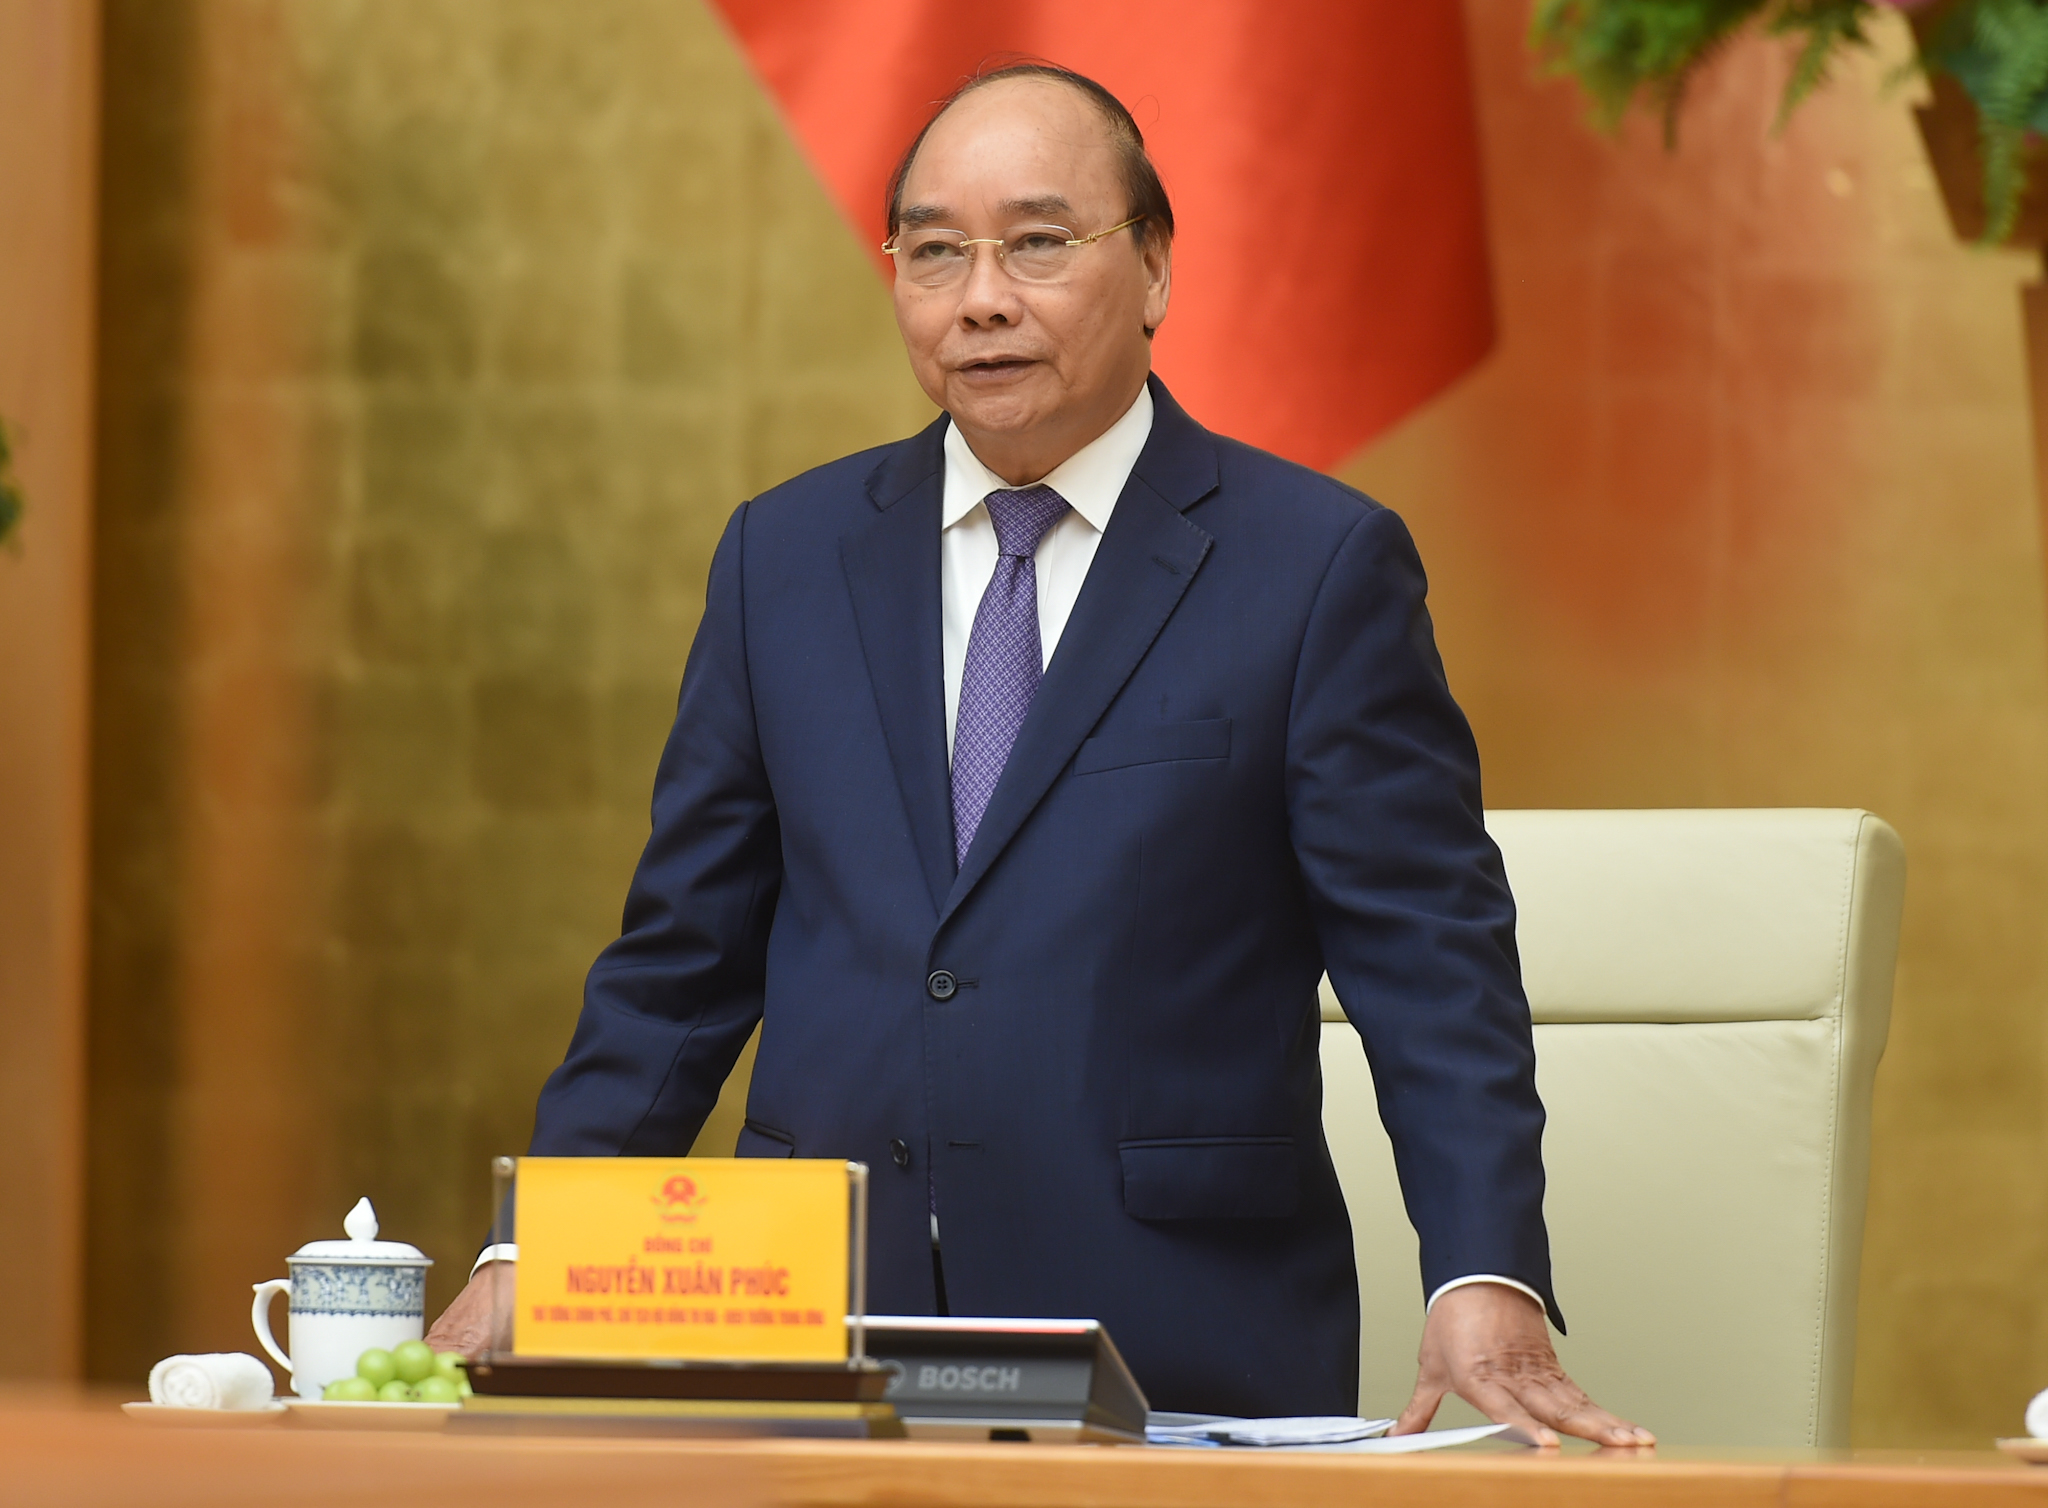 Thủ tướng Nguyễn Xuân Phúc: Thi đua khen thưởng phải hướng vào cơ sở - Ảnh: VGP/Quang Hiếu